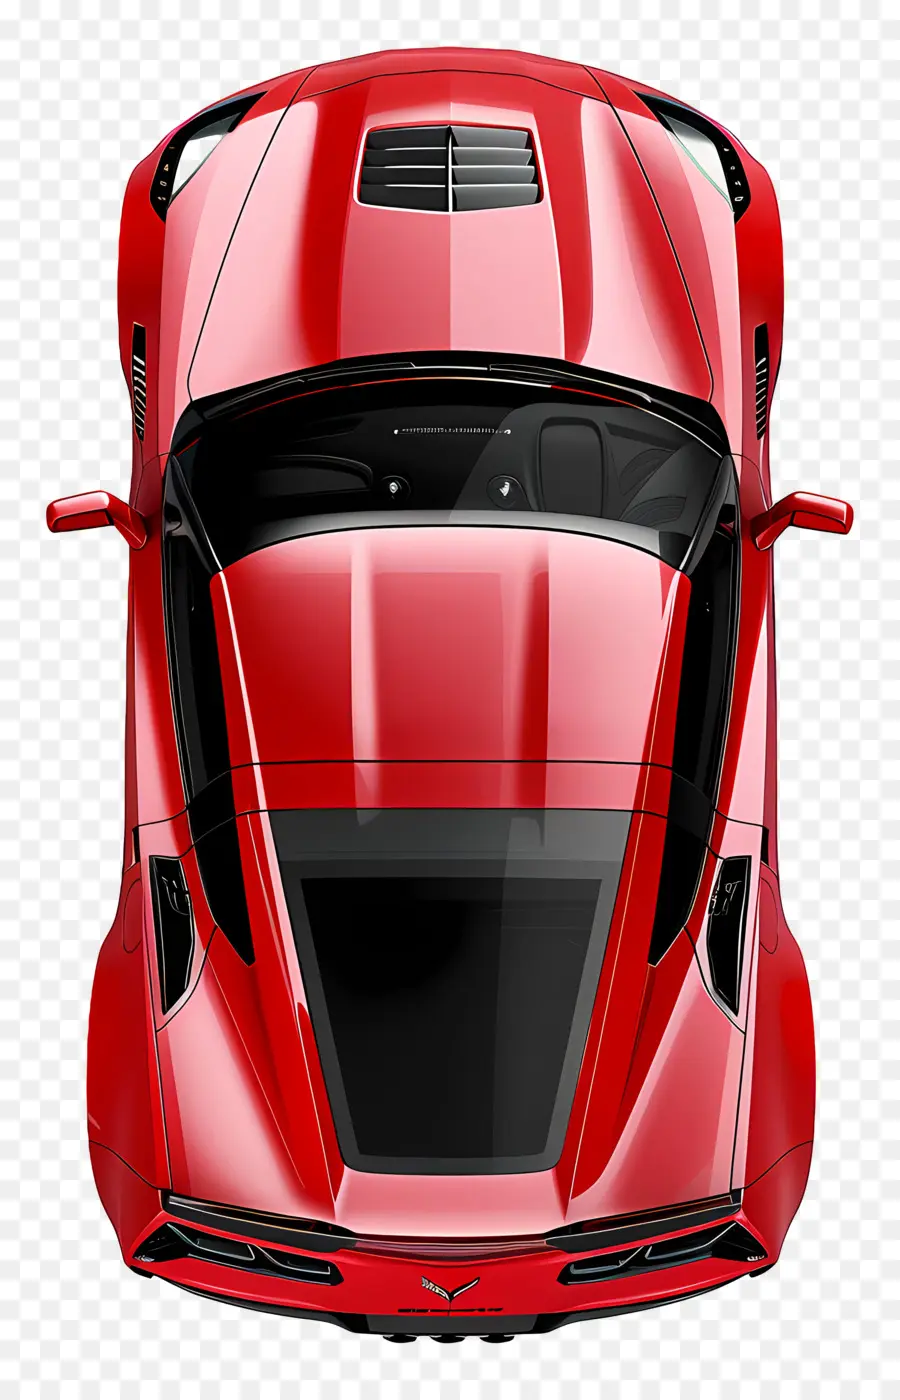 Auto -Top -Aussicht rote Sportwagenhaube Offene Windschutzscheibe Heckreifen - Roter Sportwagen mit Hood Open. 
Scharfe Details